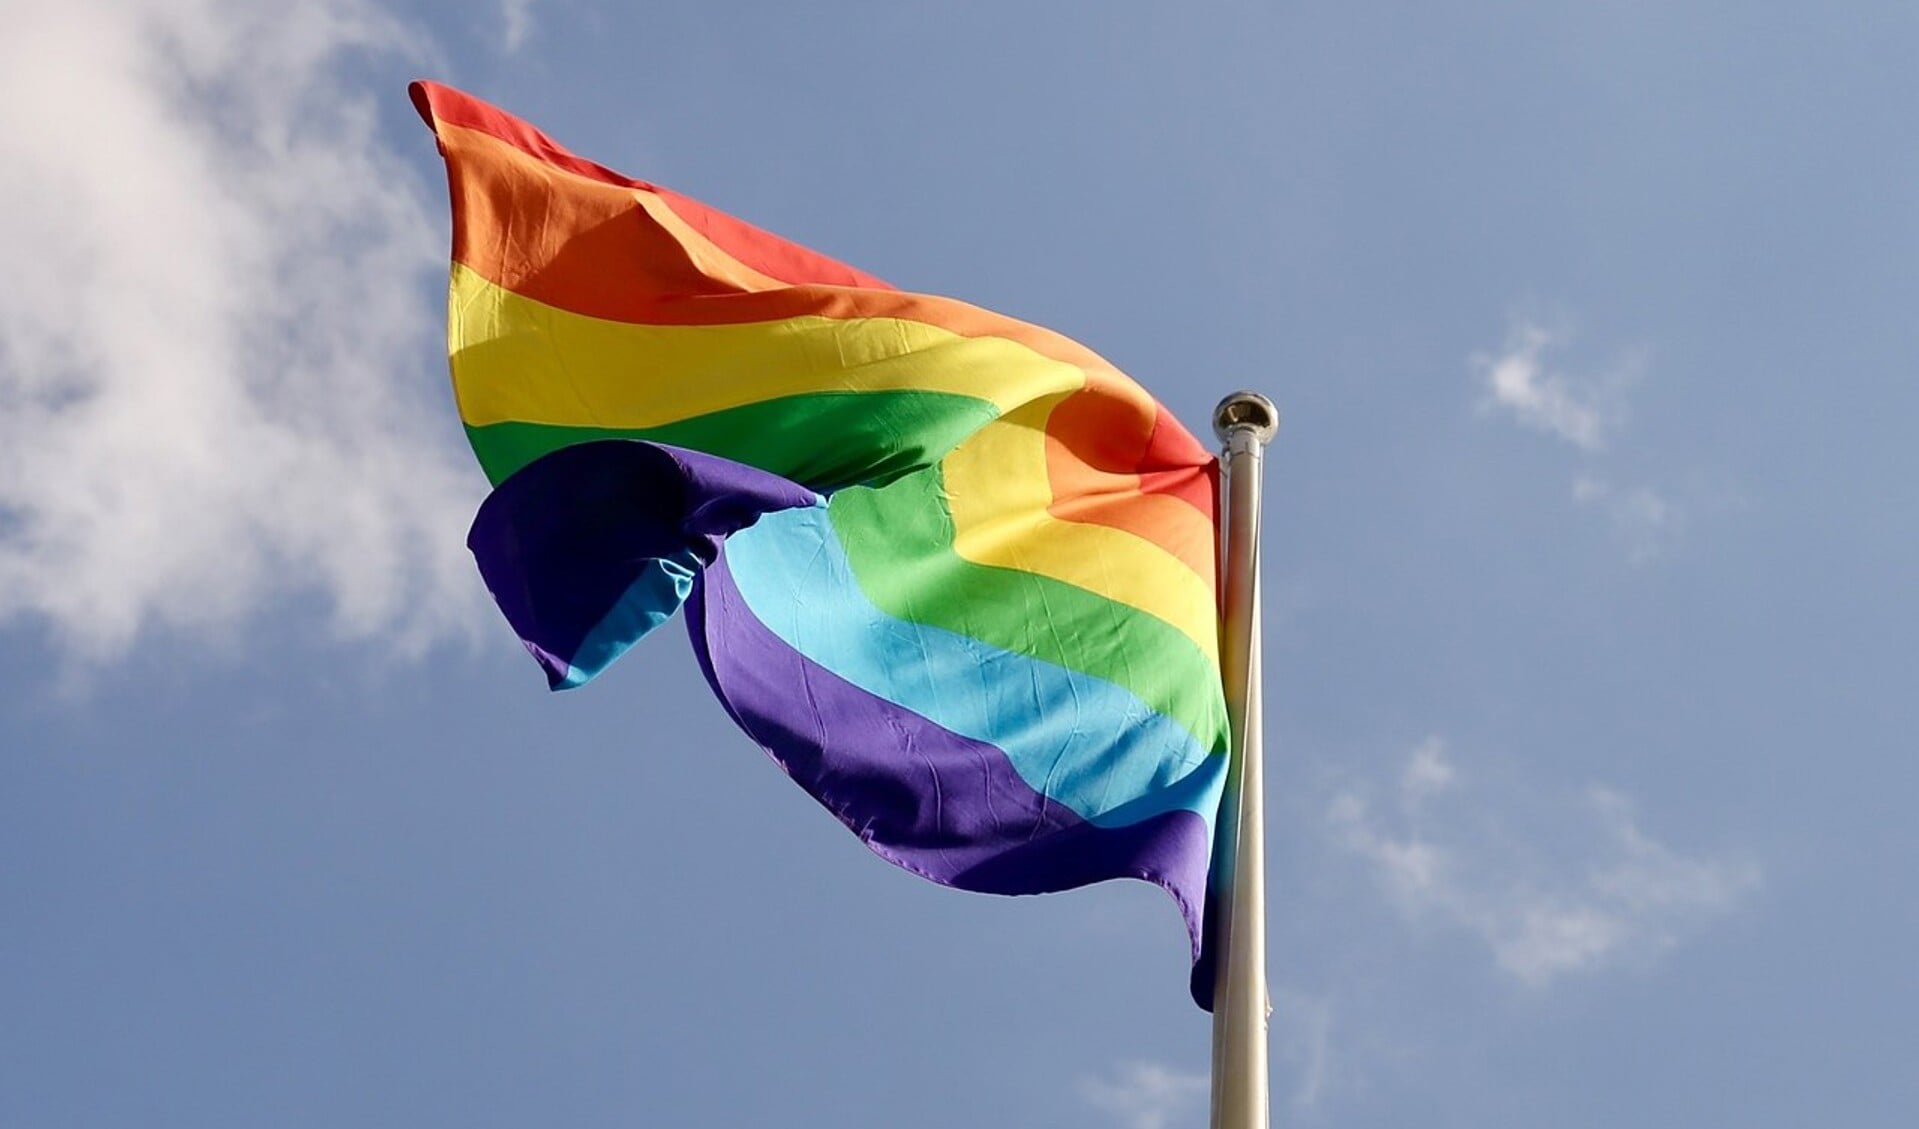 De regenboogvlag is voor ons een symbool van liefde, openheid en verbondenheid.